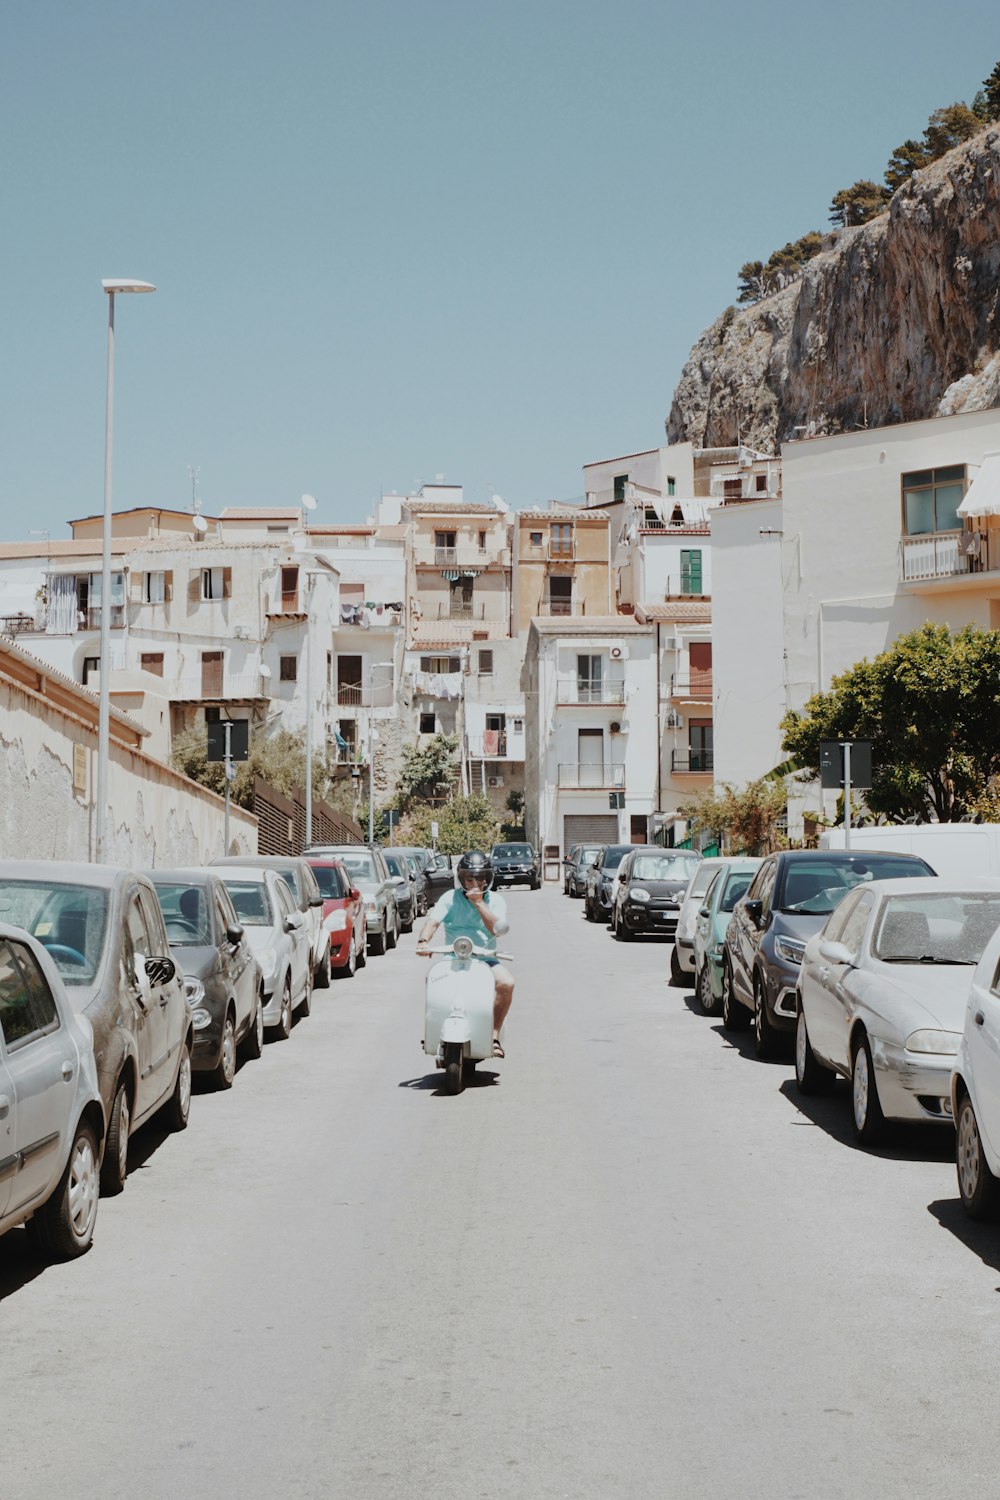 Eine Frau fährt mit einem Skateboard eine Straße entlang neben geparkten Autos